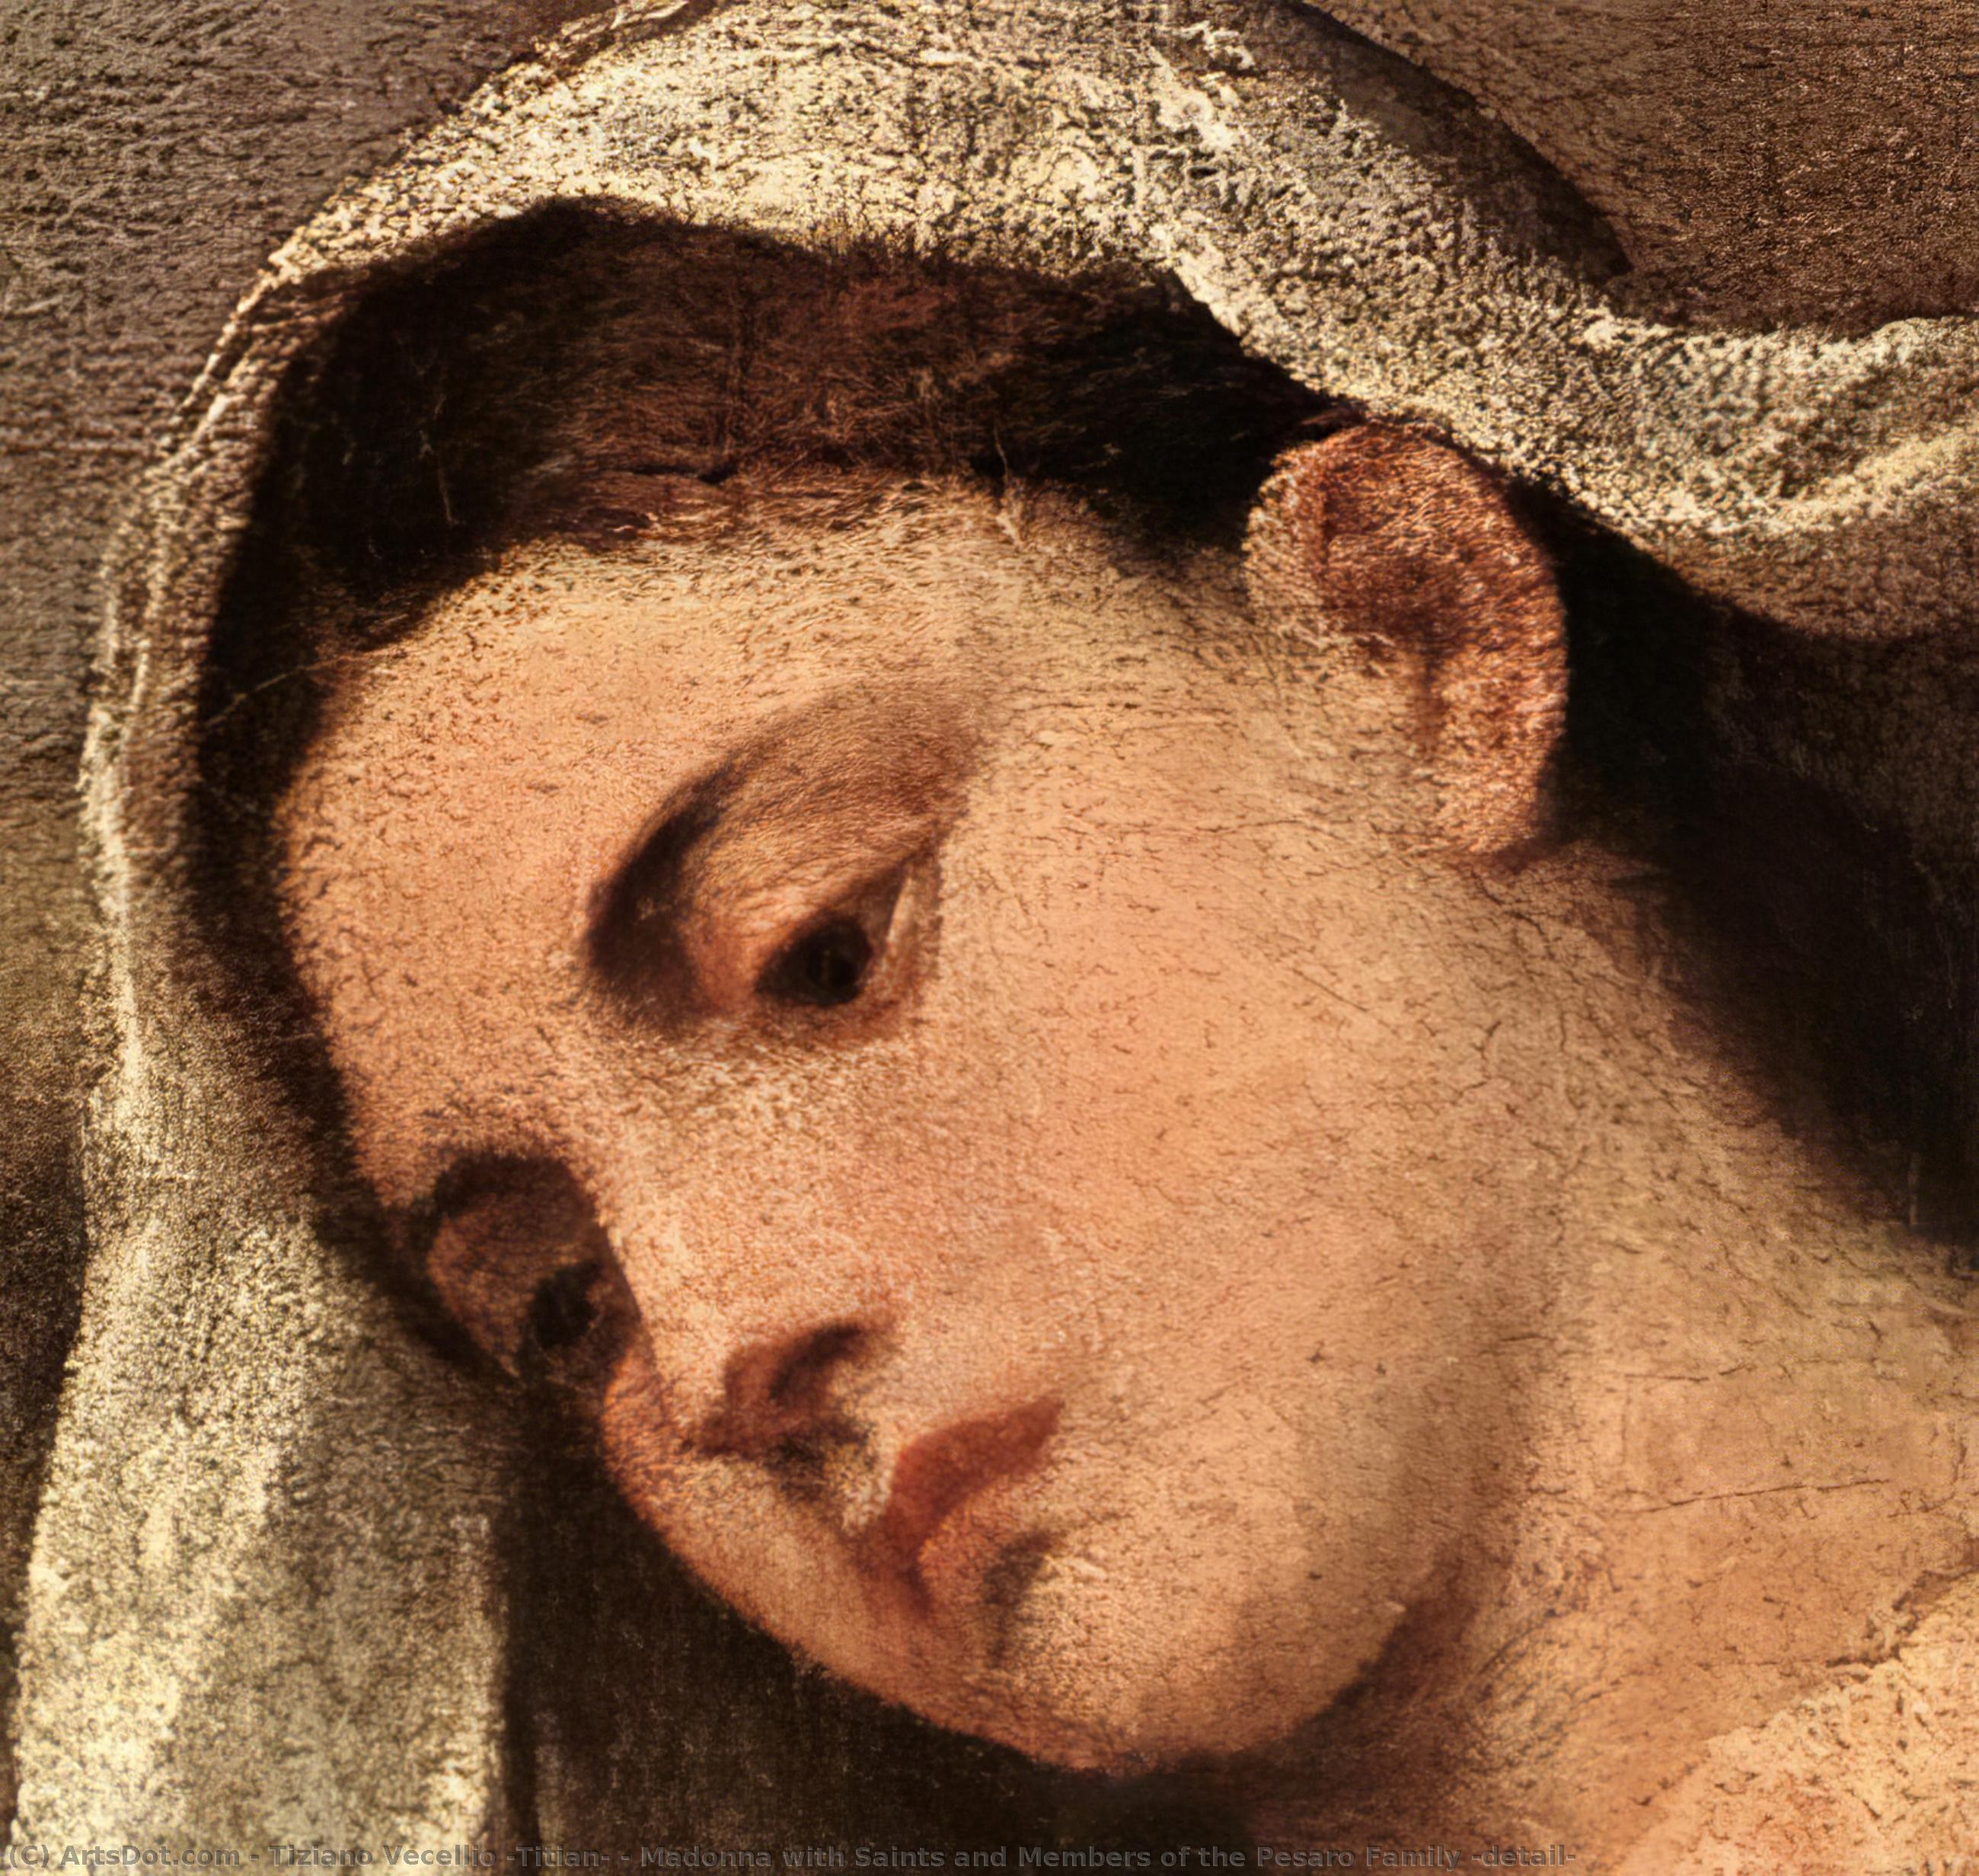 Comprar Reproducciones De Arte Del Museo Madonna con santos y miembros de la familia Pesaro (detalle), 1519 de Tiziano Vecellio (Titian) (1490-1576, Italy) | ArtsDot.com